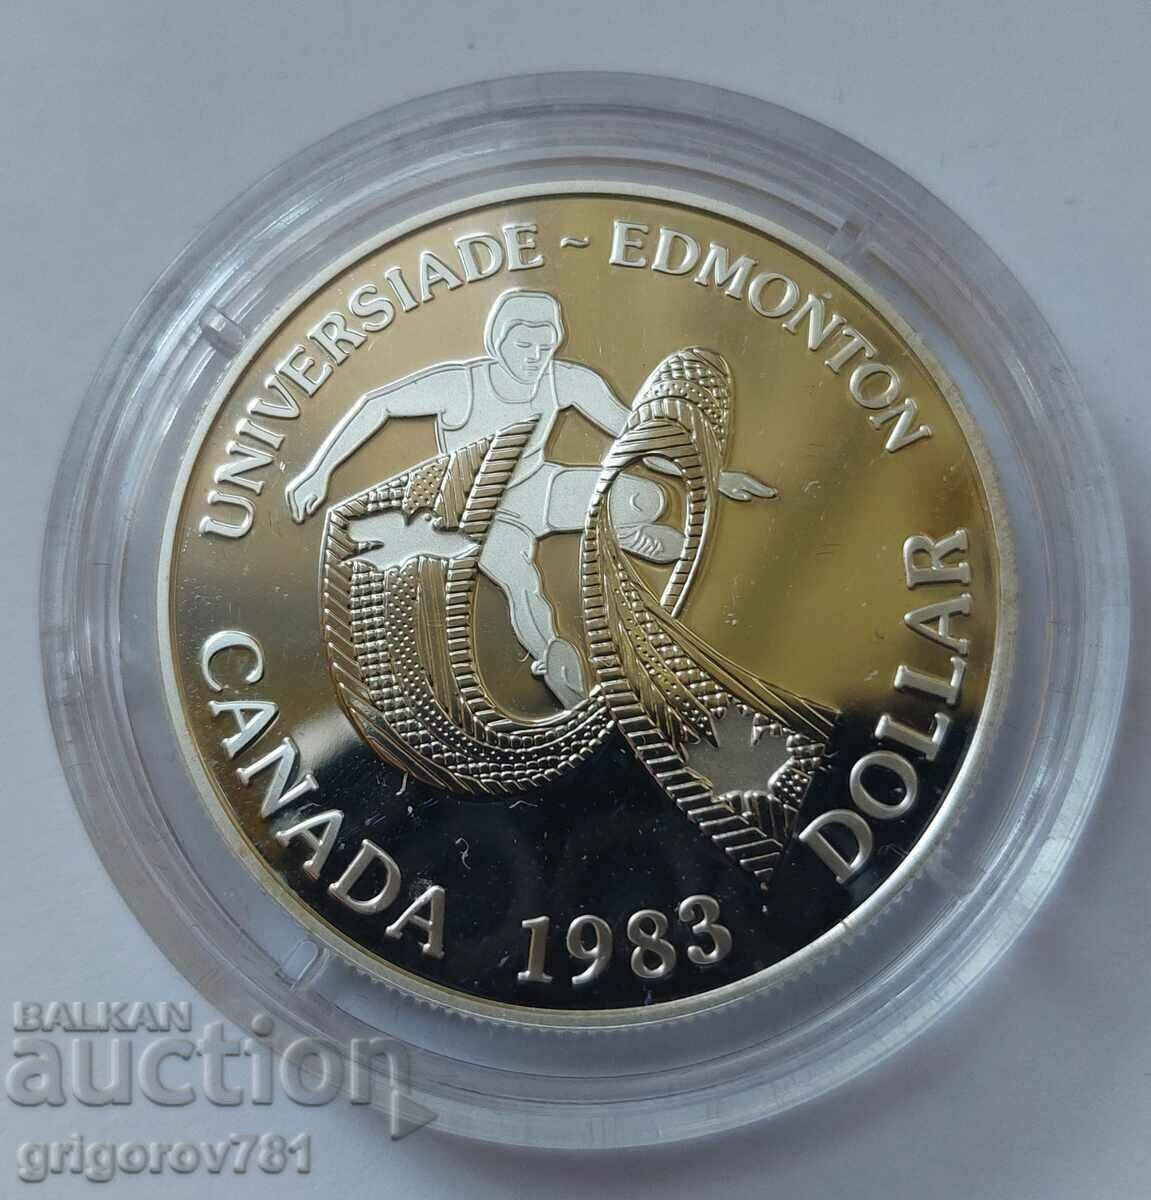 1 dolar de argint Canada 1983 Proof - Monedă de argint